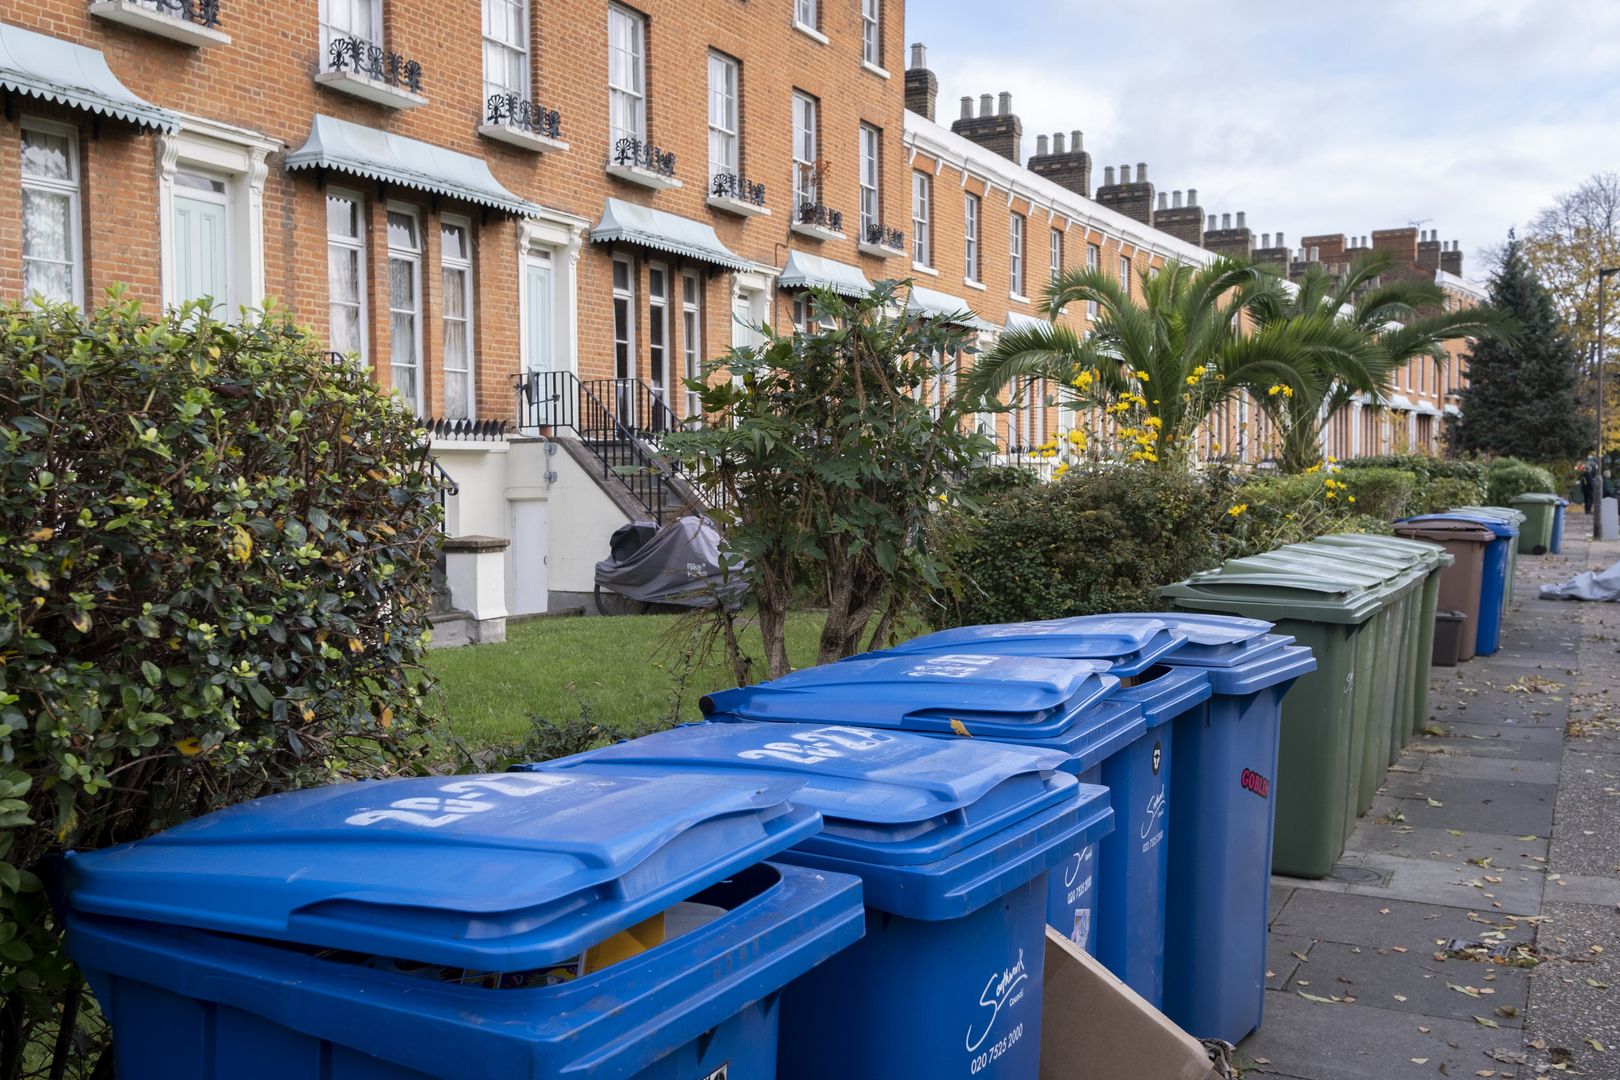 Anglicy mają problem ze segregacją odpadów? Mają rozwiązanie